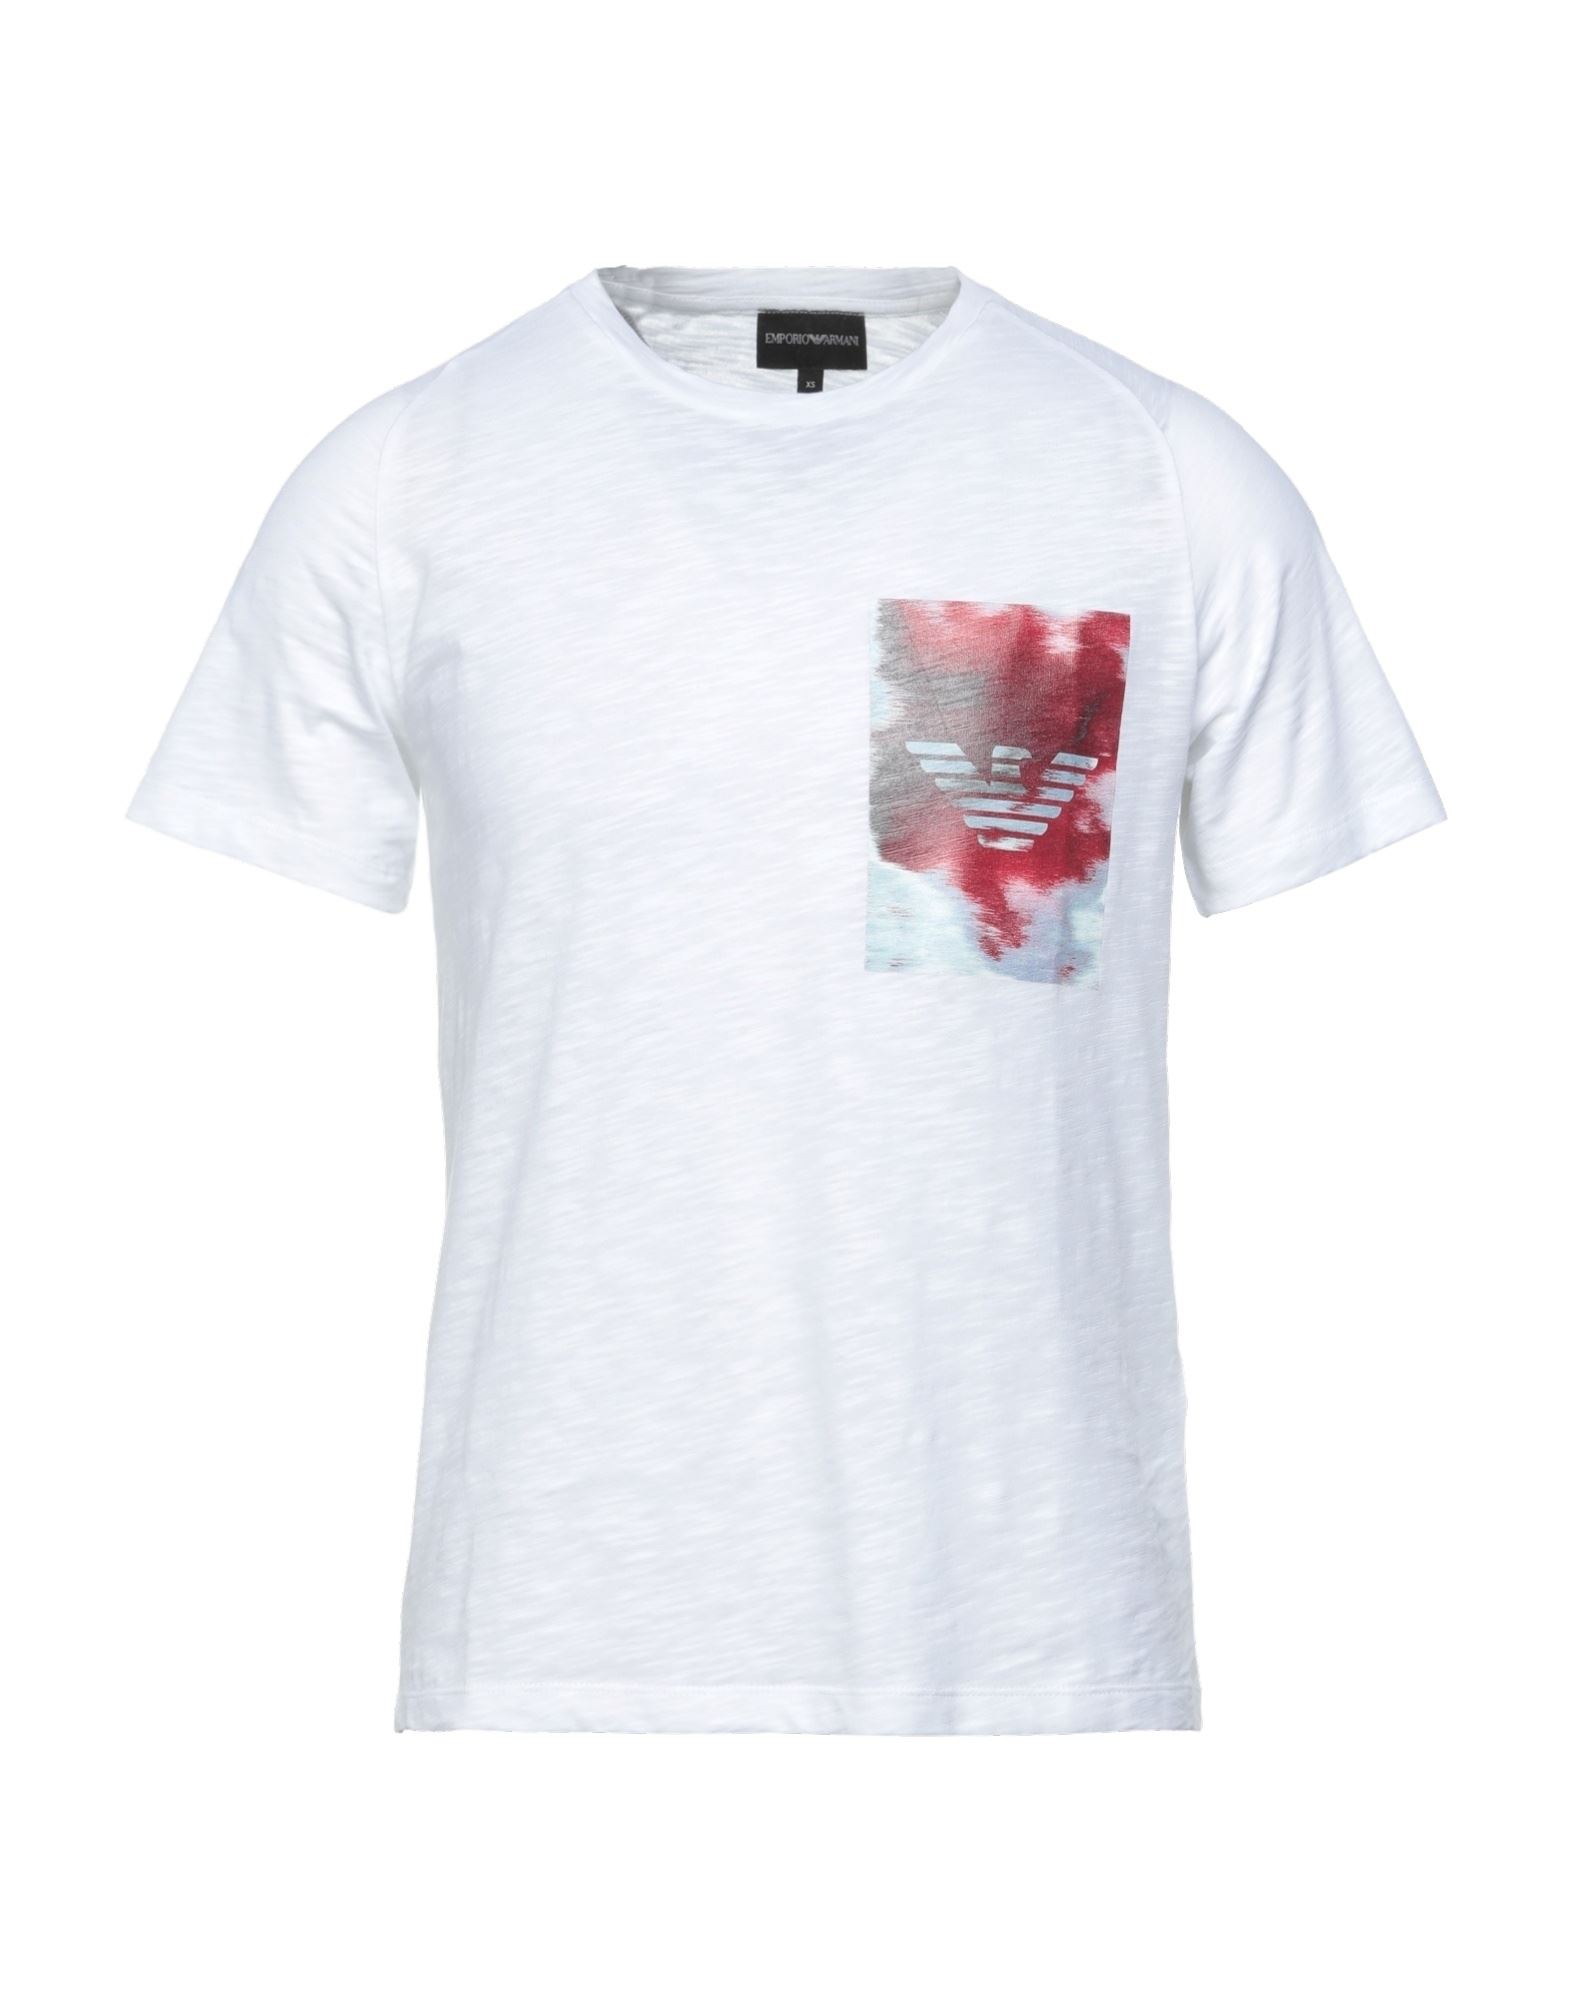 エンポリオアルマーニ(EMPORIO ARMANI) tシャツ メンズTシャツ 